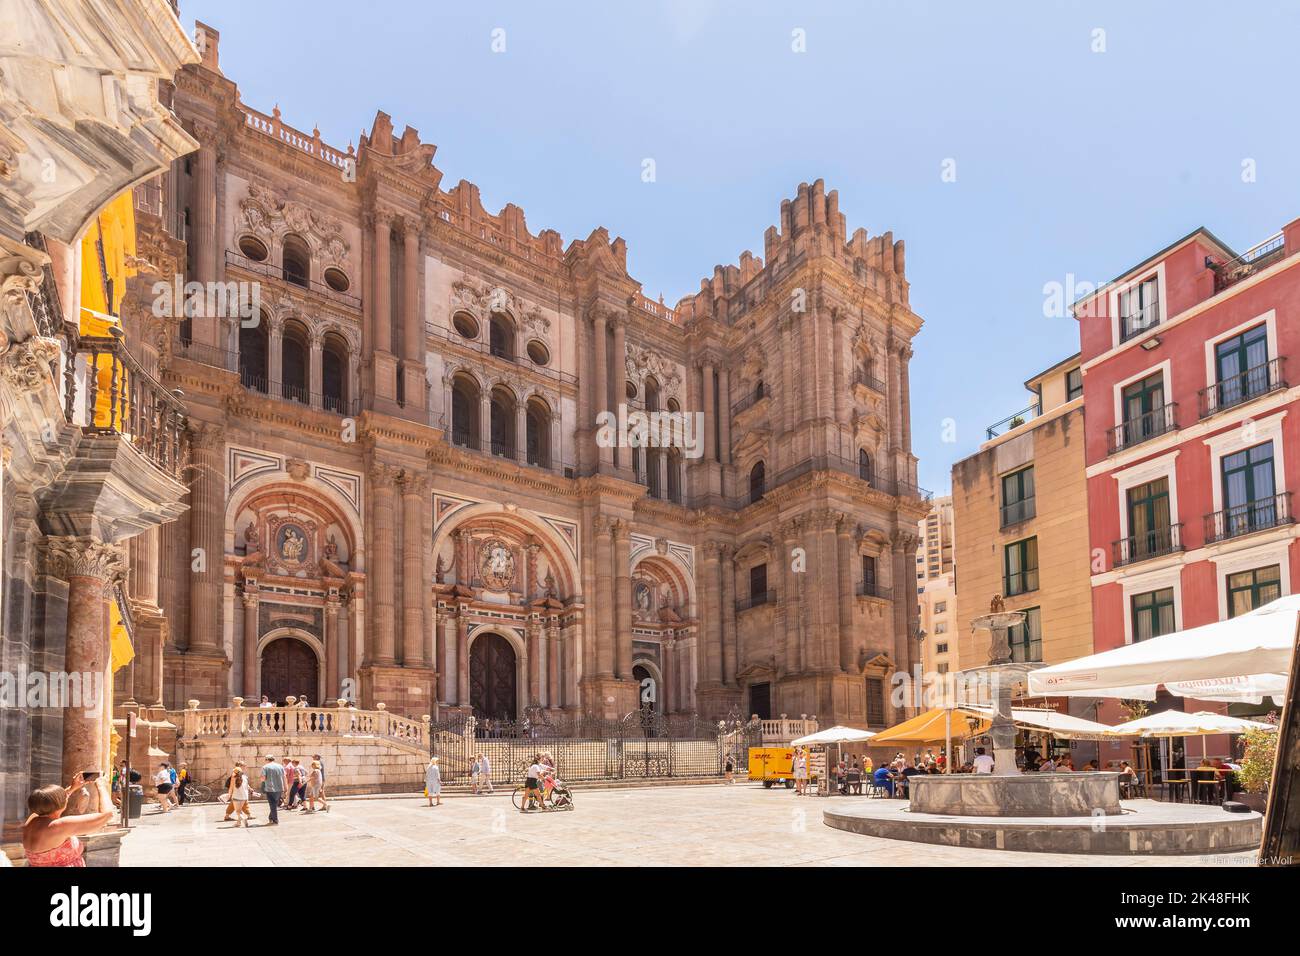 Blick auf die Fassade der Kathedrale von Malaga oder Santa Iglesia Catedral Basílica de la Encarnación, mit einem Brunnen und Touristen auf dem Stadtplatz Stockfoto